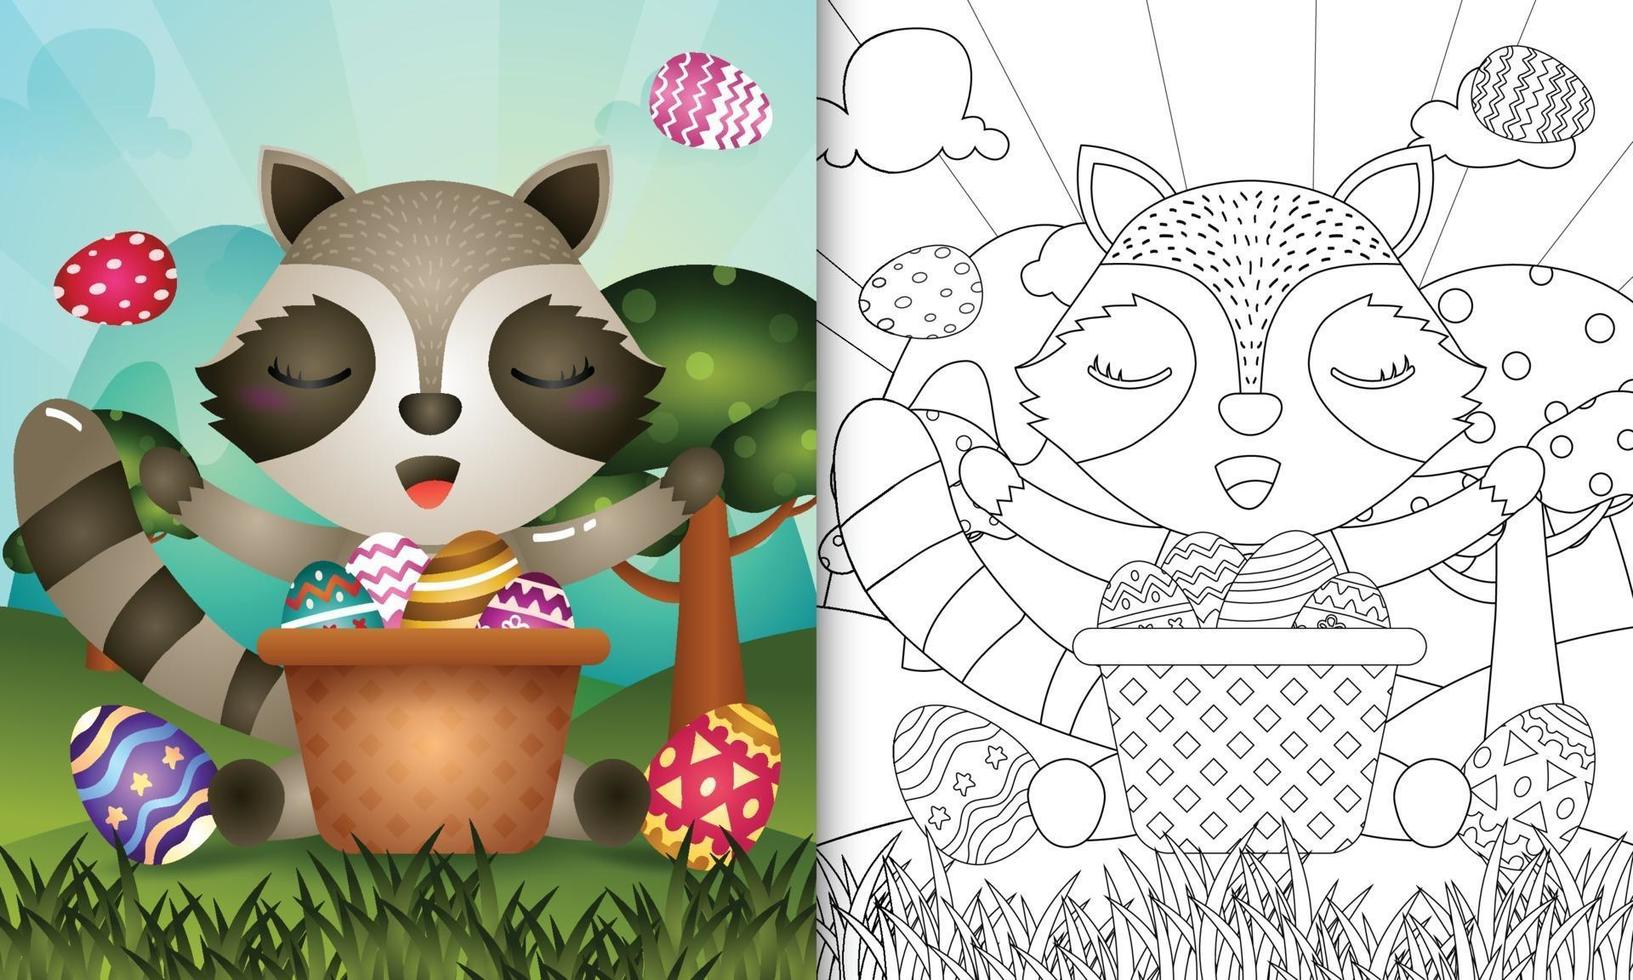 livro de colorir para crianças com tema feliz dia de páscoa com ilustração de um guaxinim fofo no ovo balde vetor